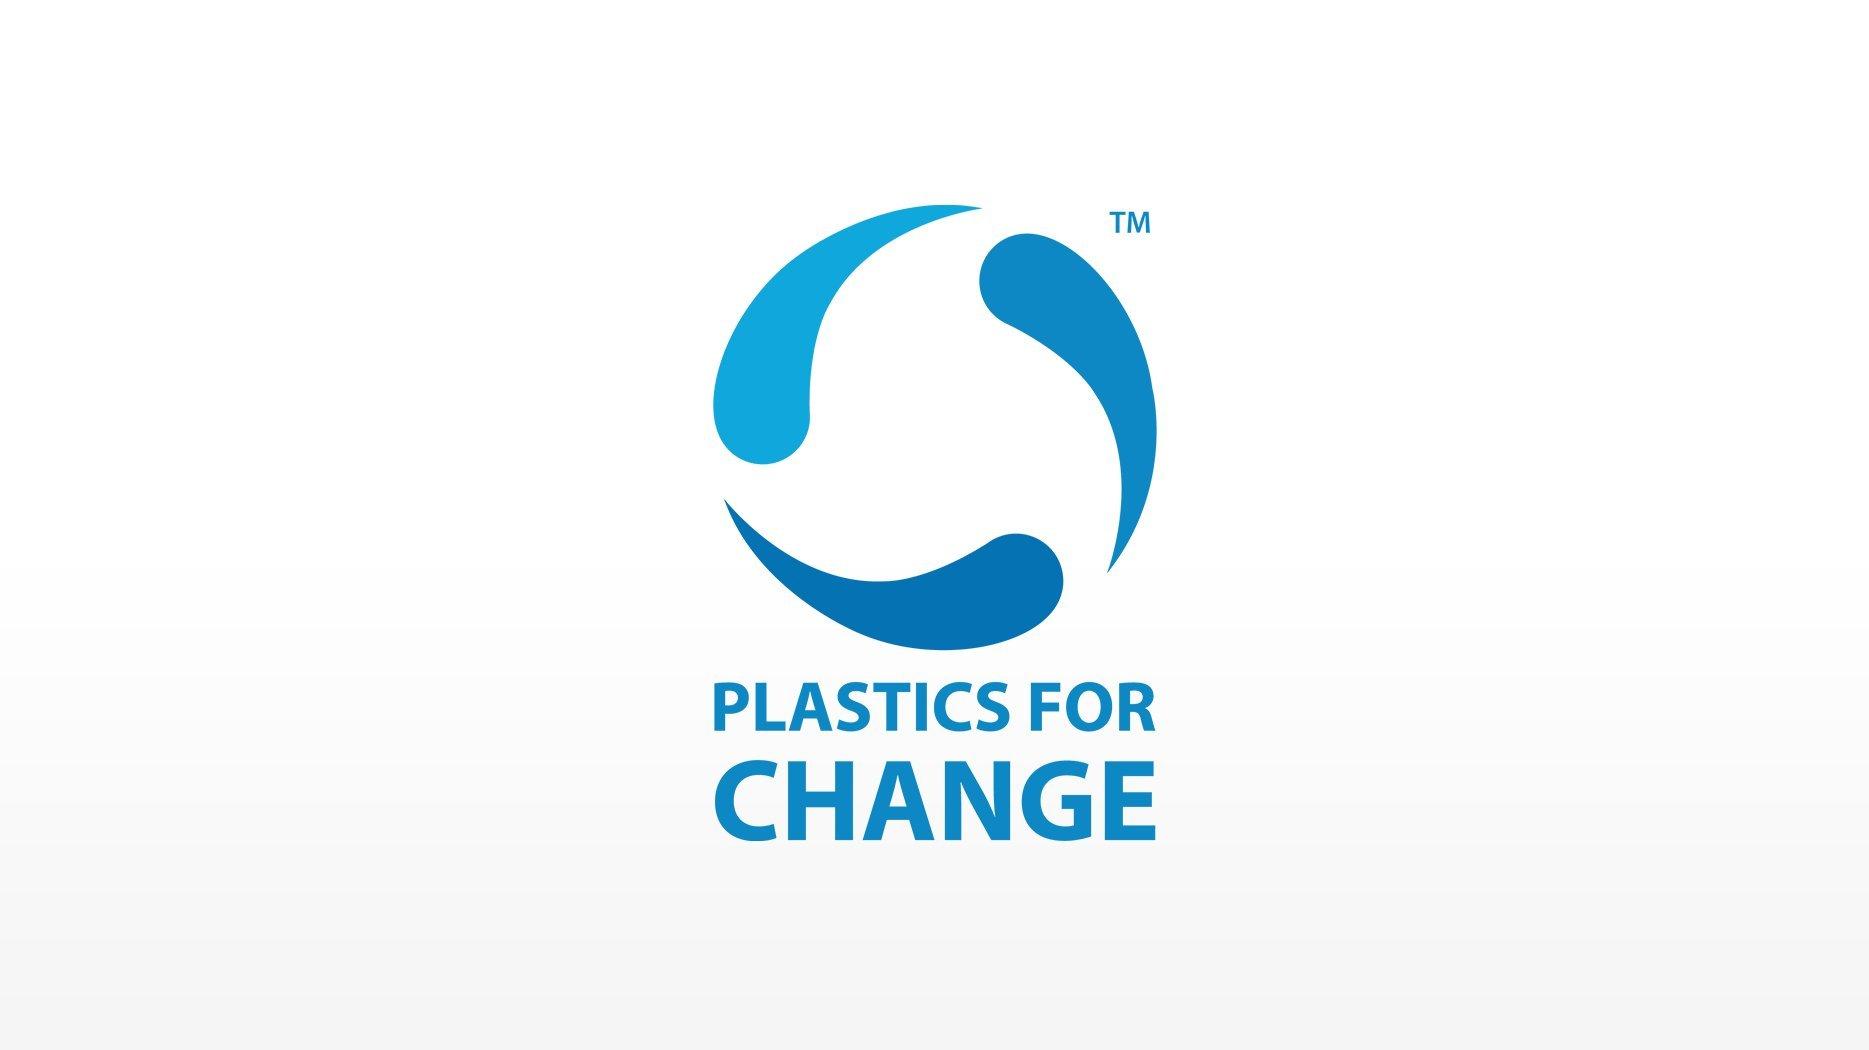 CATRICE Durabilité et responsabilité sociale Logo Plastics for Change